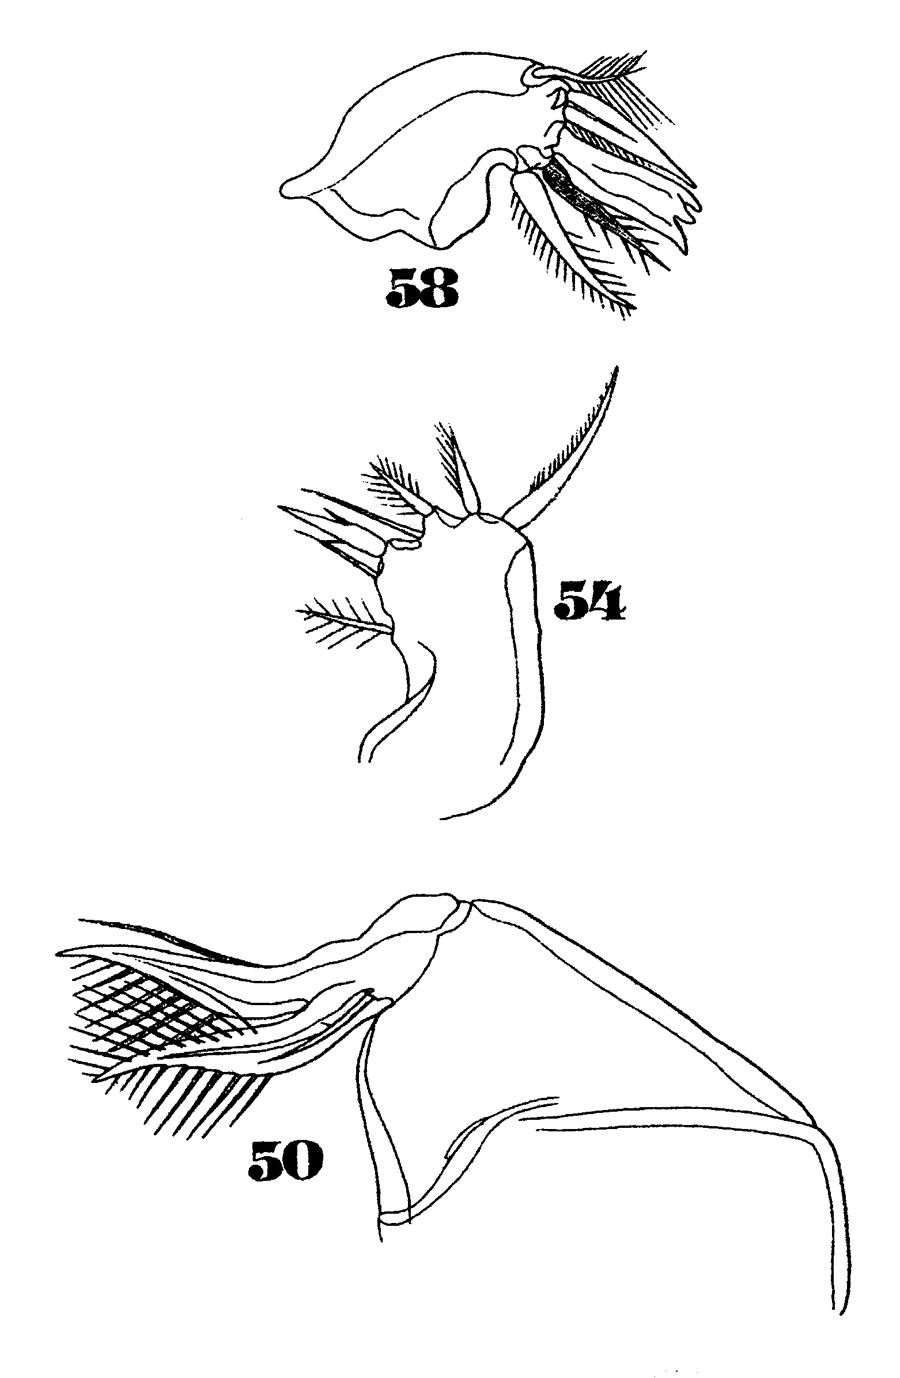 Espèce Oncaea venusta - Planche 27 de figures morphologiques